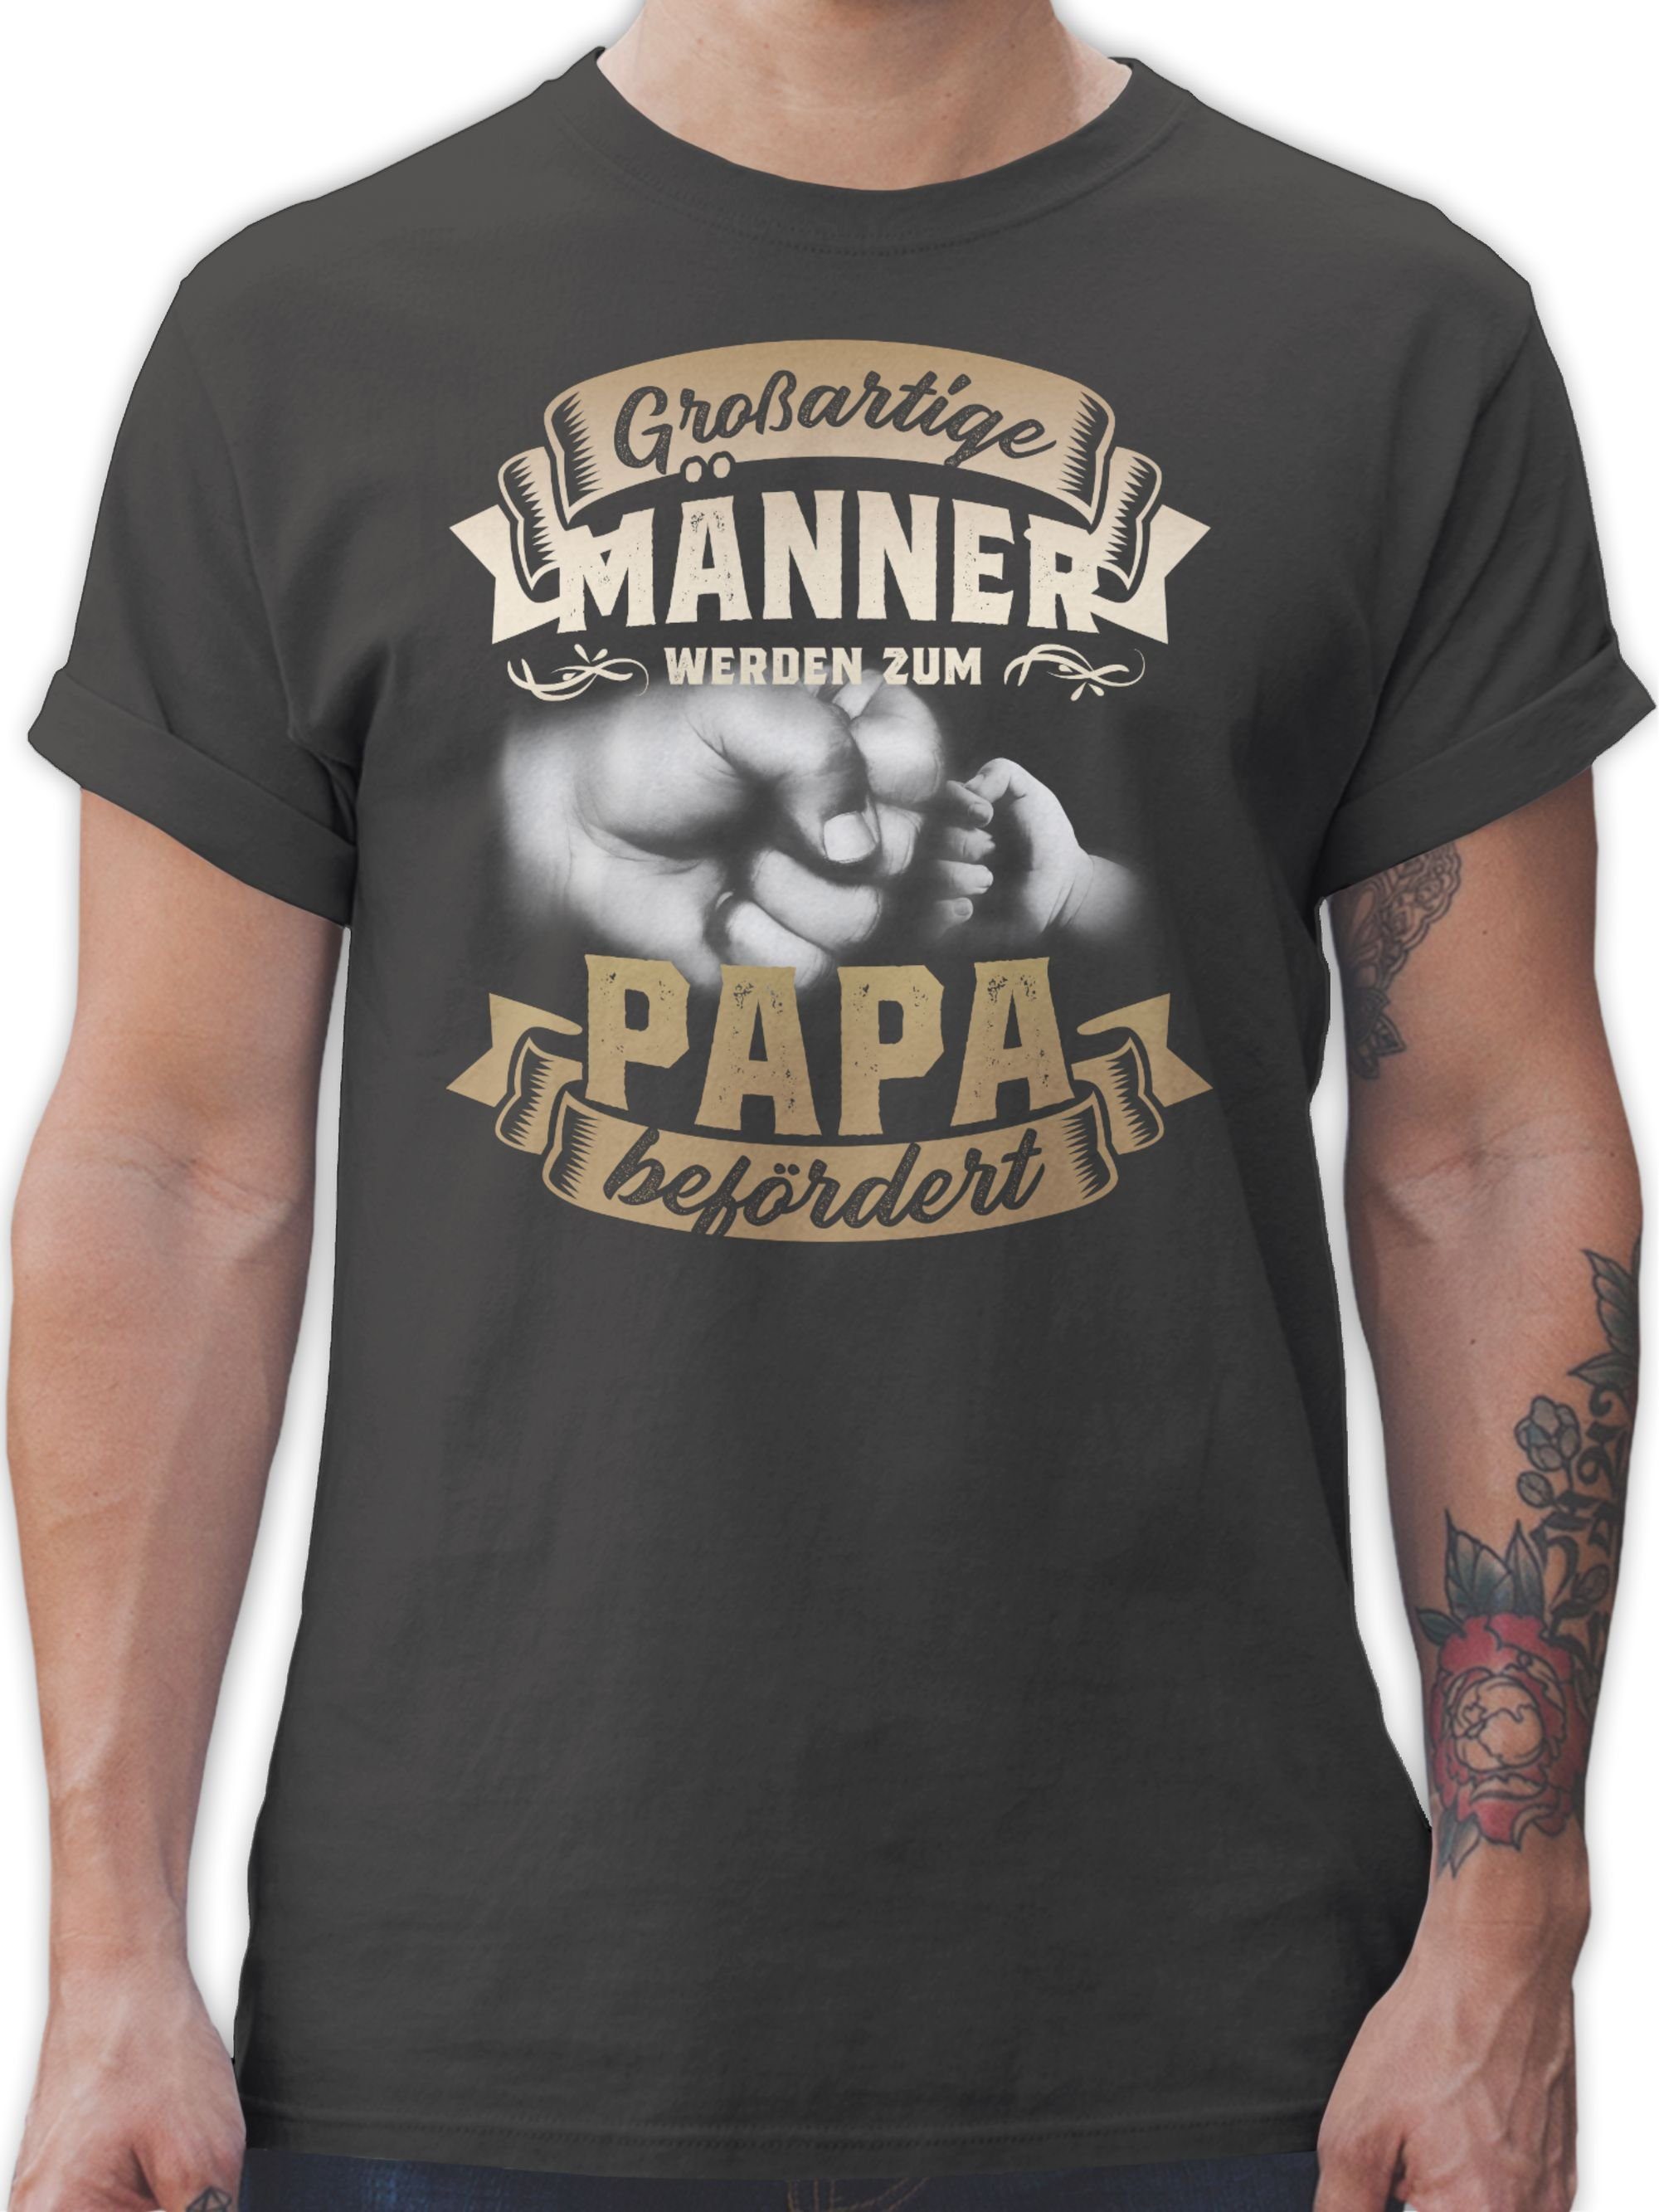 Shirtracer T-Shirt Großartige Männer werden zum Papa befördert - Geschenk Geburt Väter Vatertag Geschenk für Papa 02 Dunkelgrau